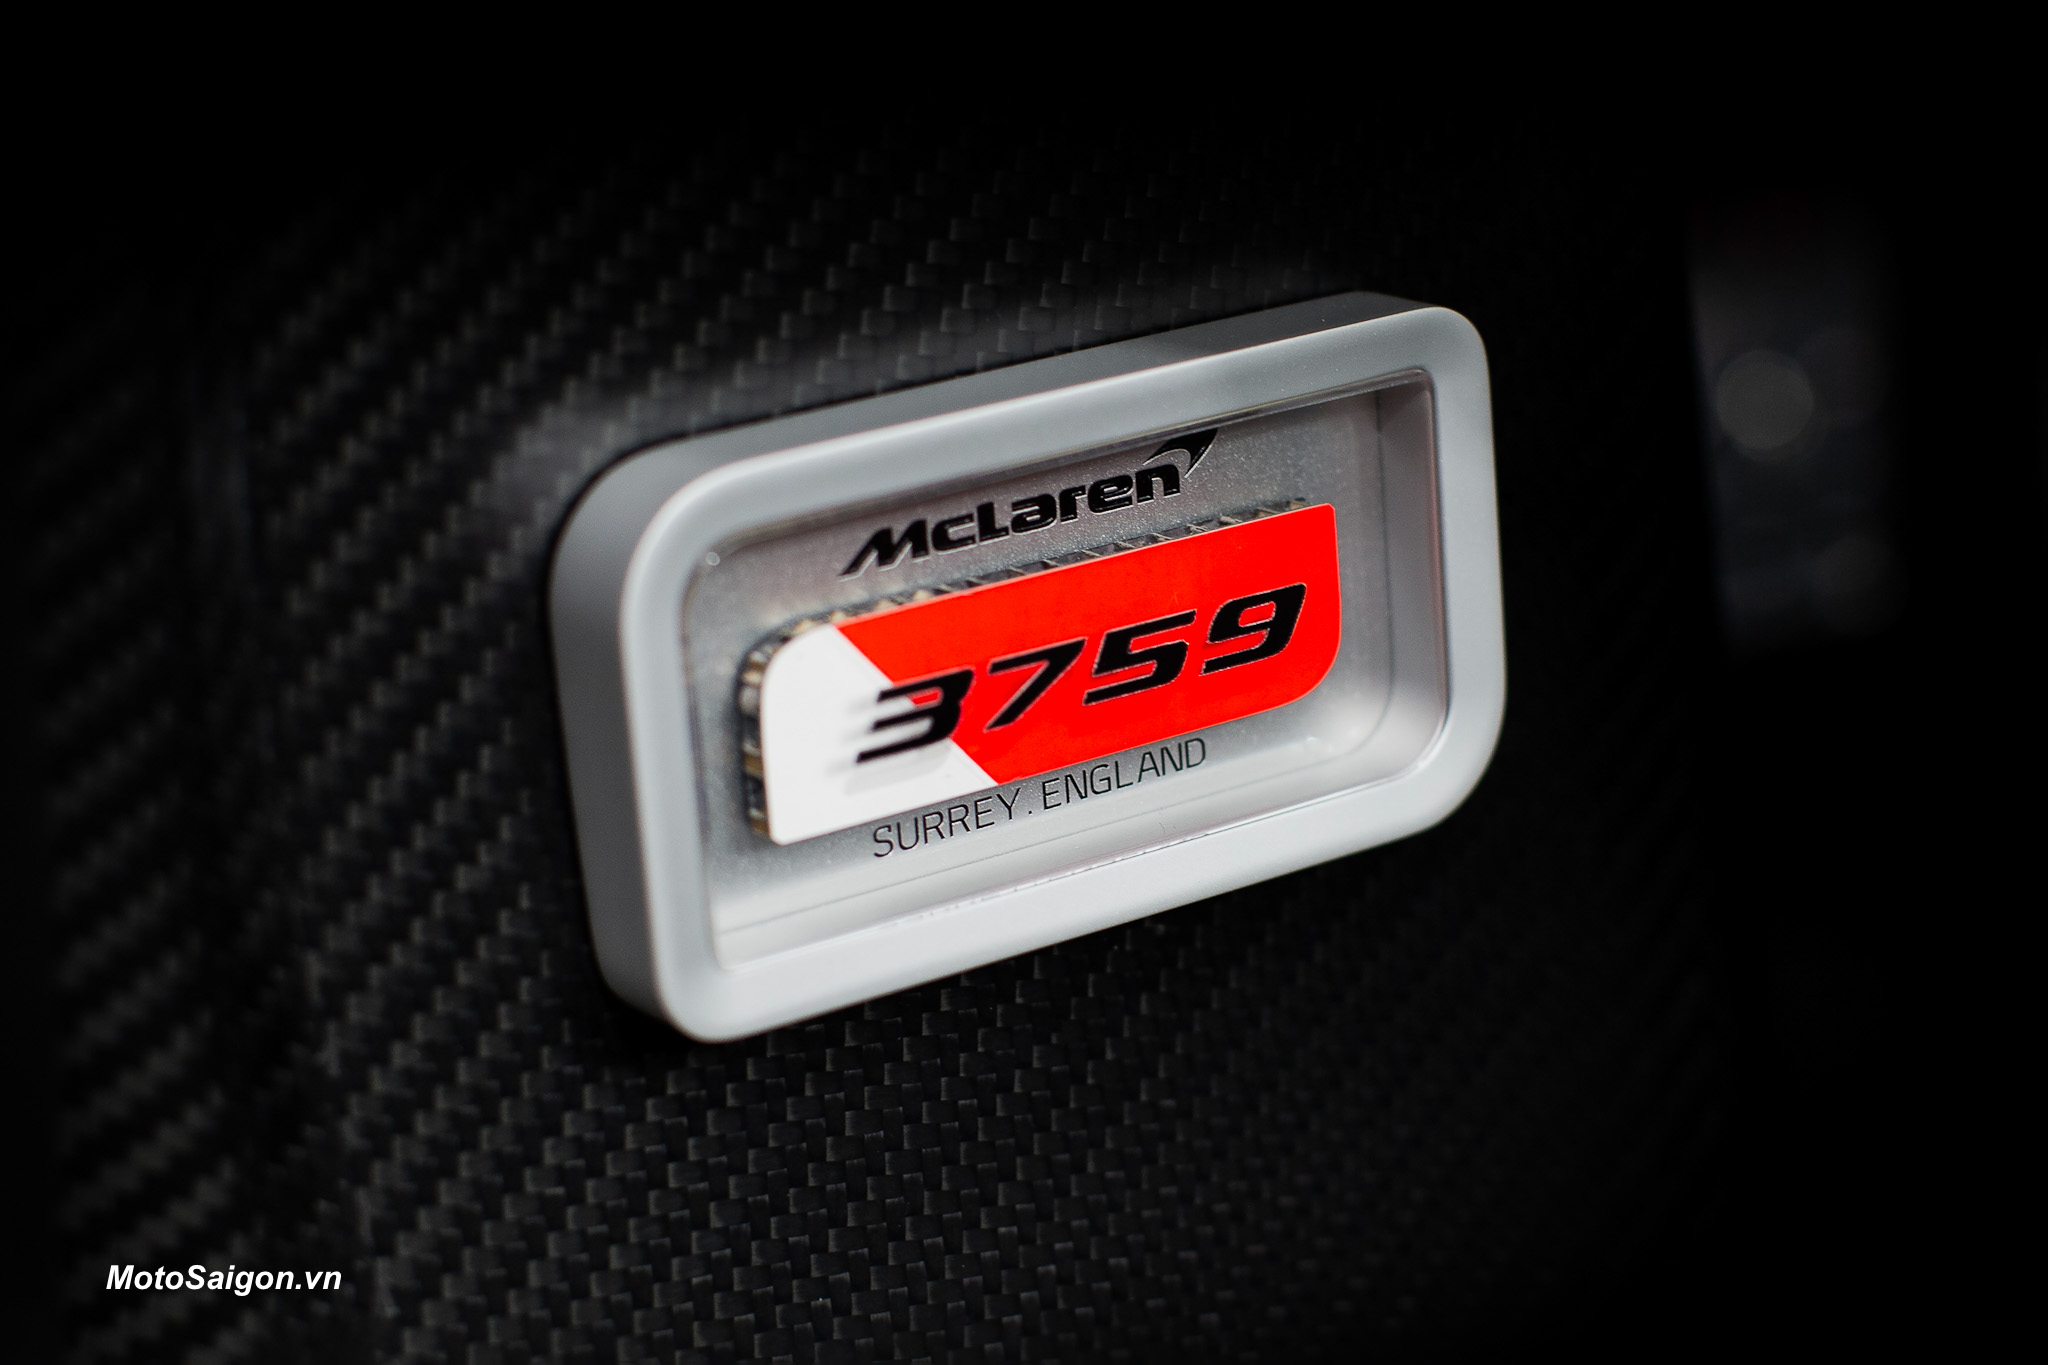 McLaren 750S chủ đề 3-7-59 – phiên bản tôn vinh thành tích chiến thắng ‘Triple Crown’